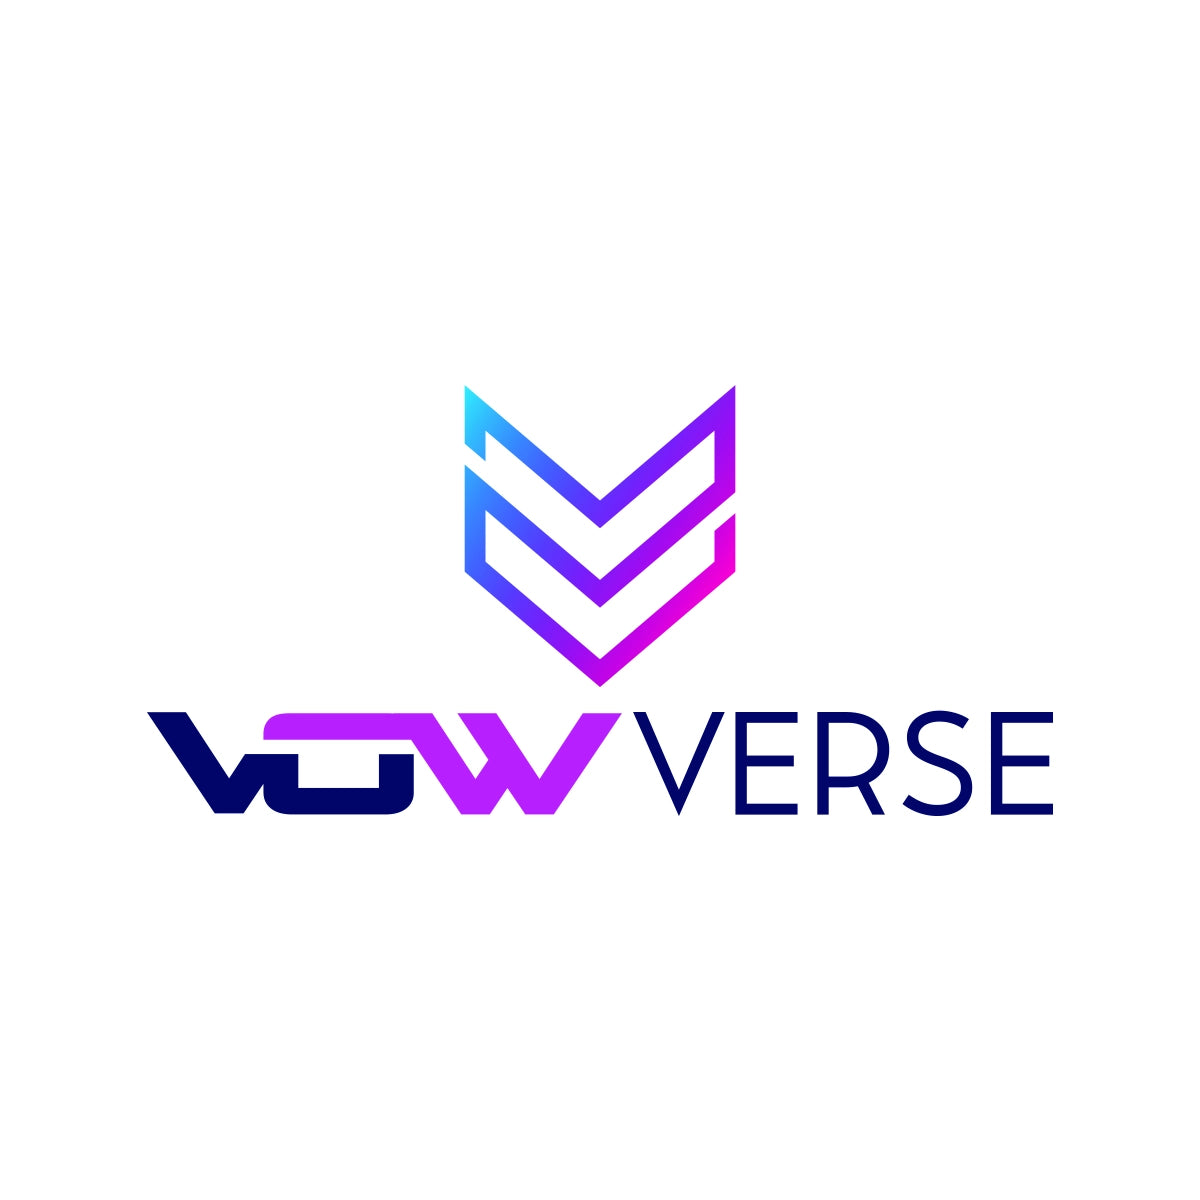 vowverse.com